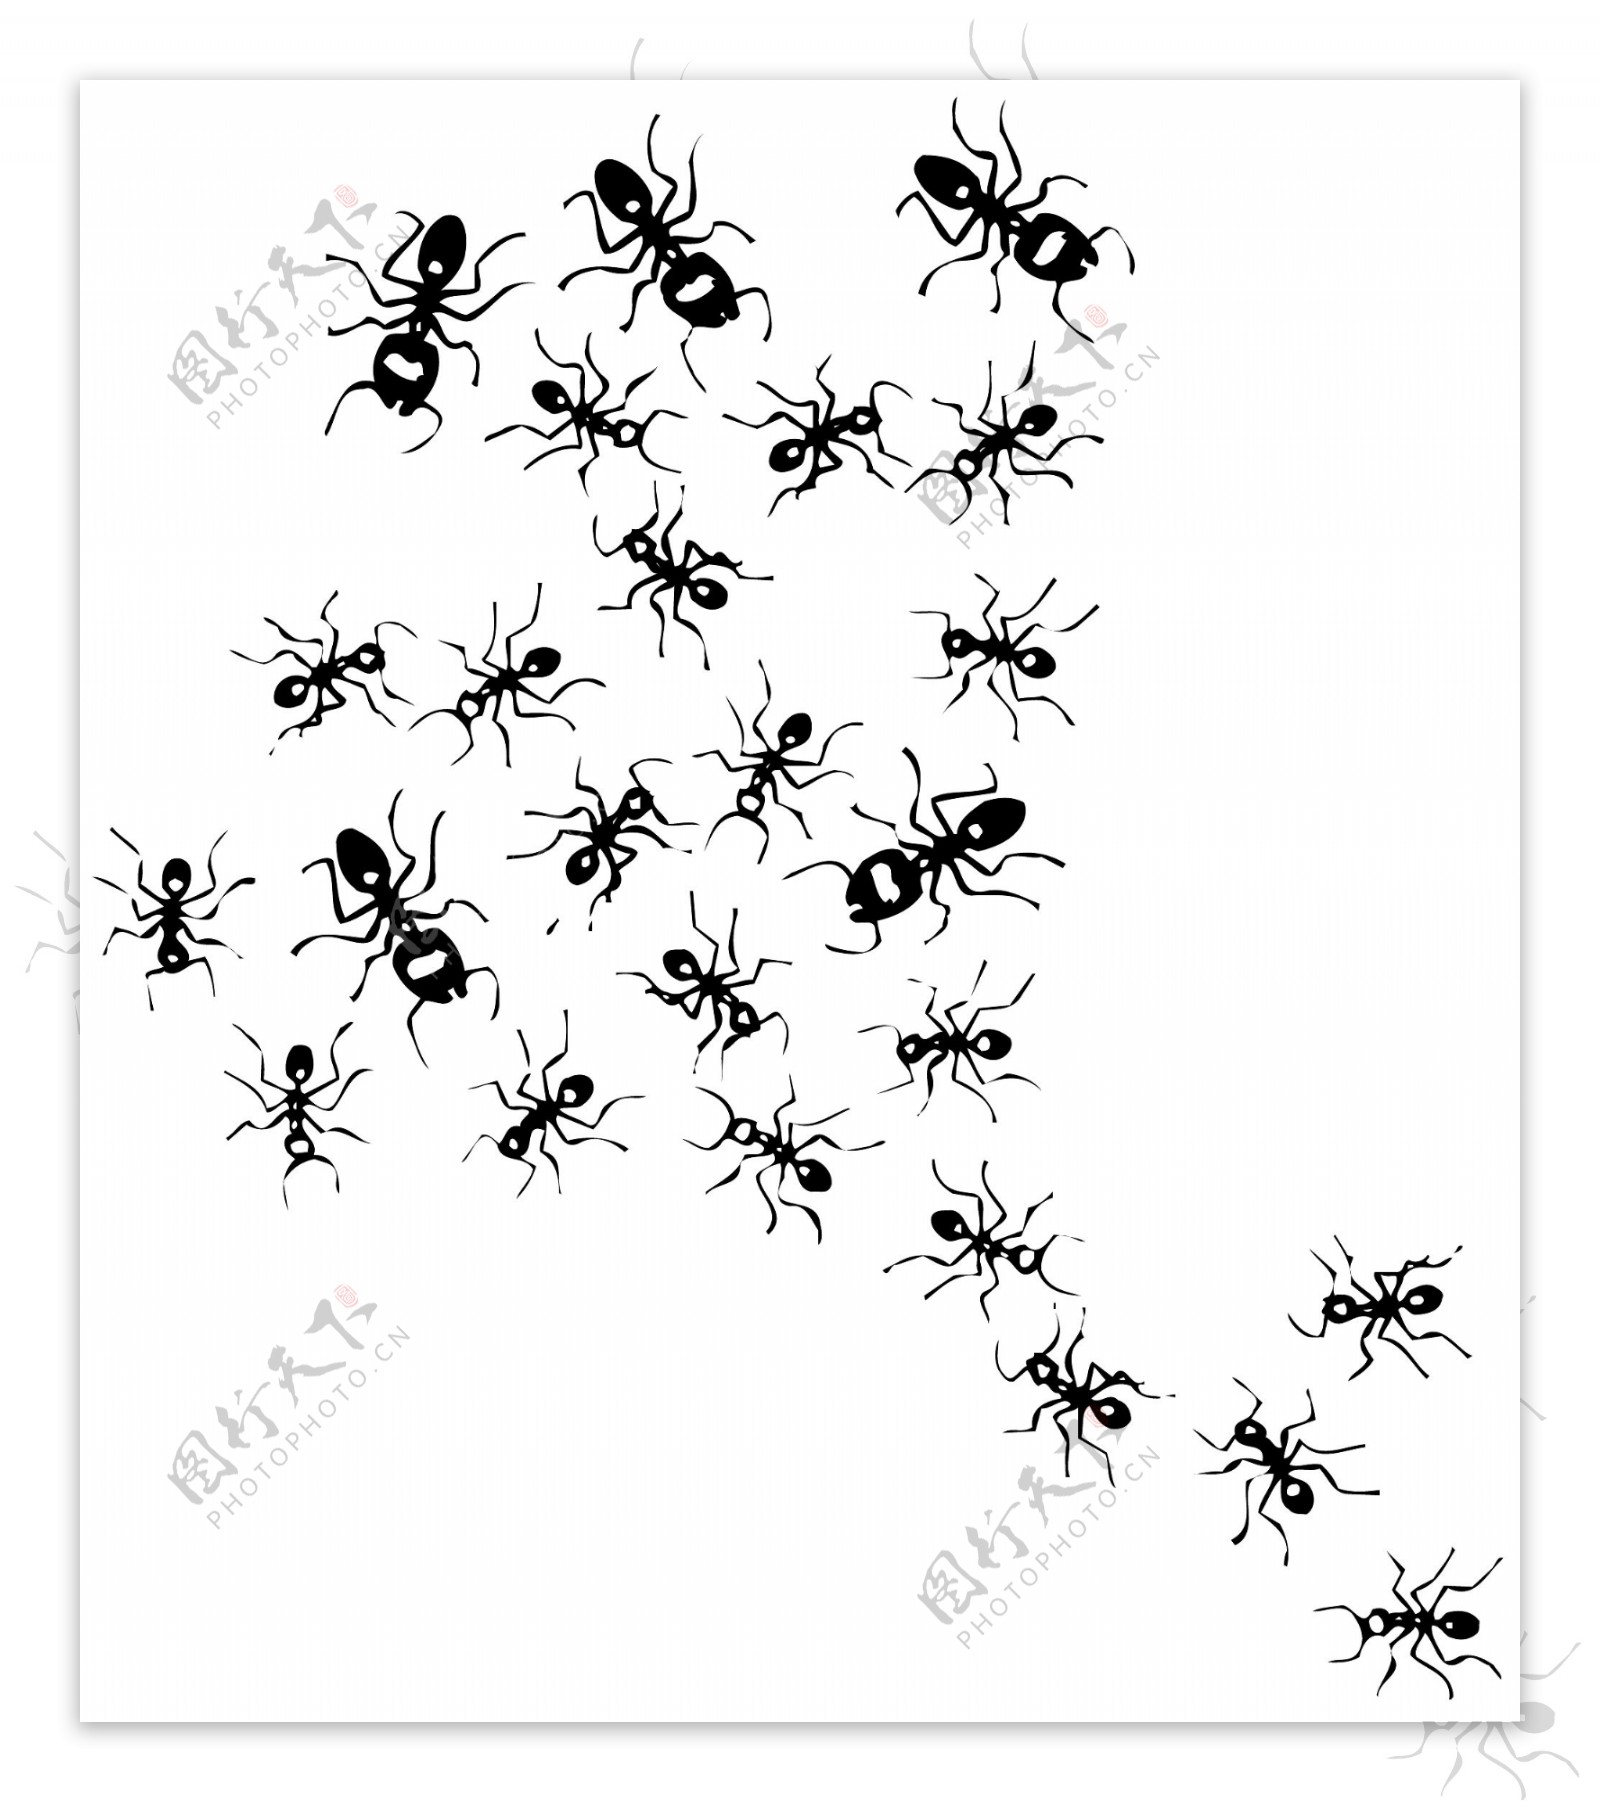 甲虫昆虫矢量素材EPS格式0079